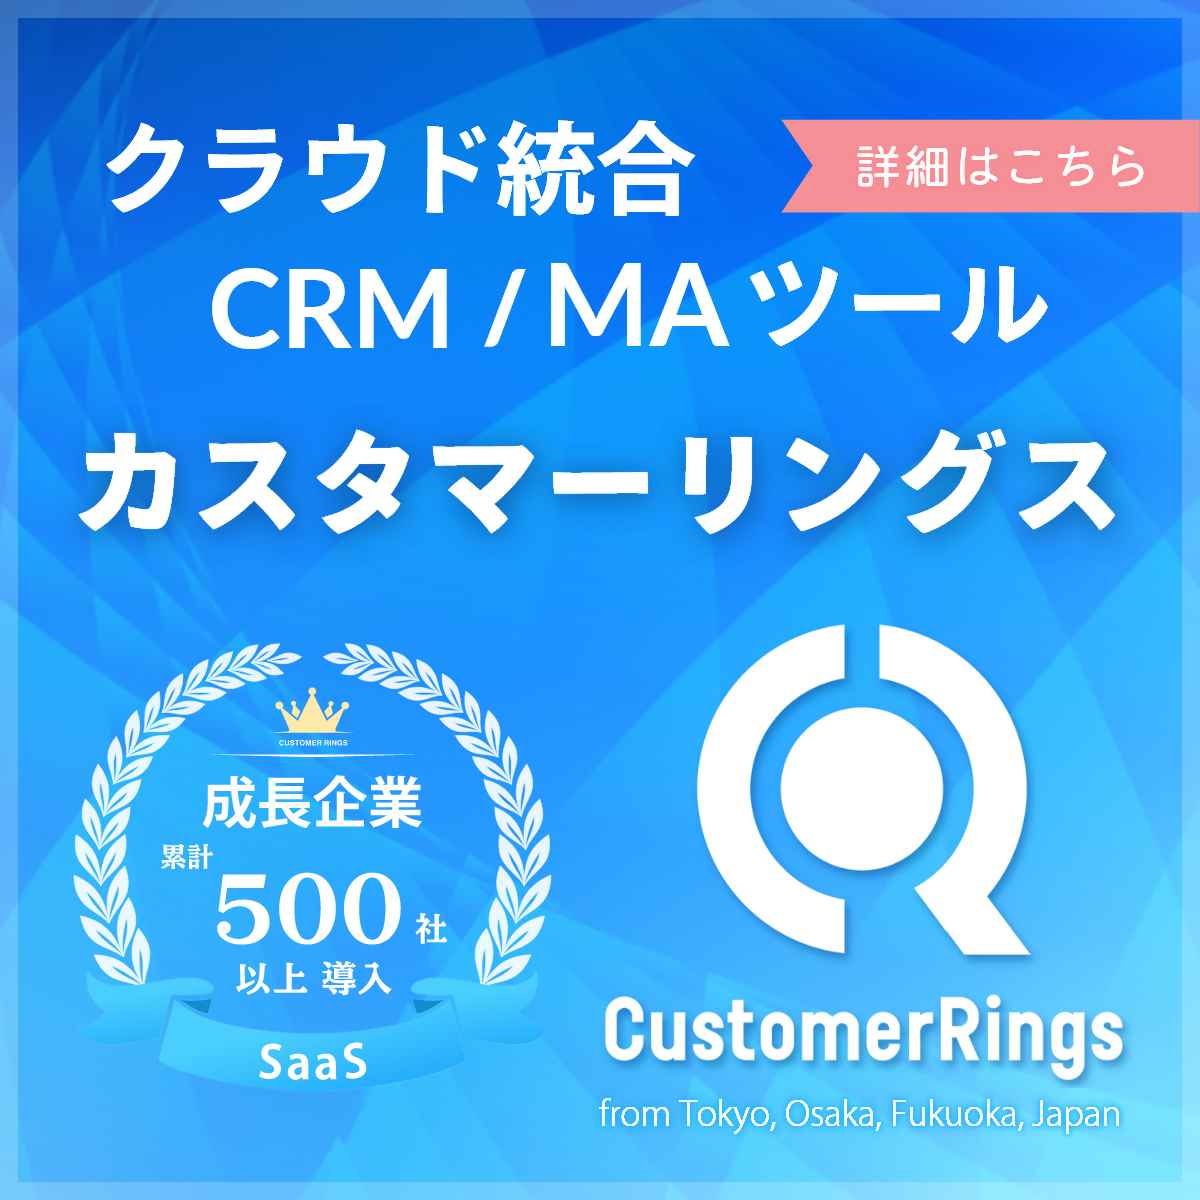 CustomerRings_クラウド統合CRM/MAツール_1200 x 1200のバナーデザイン